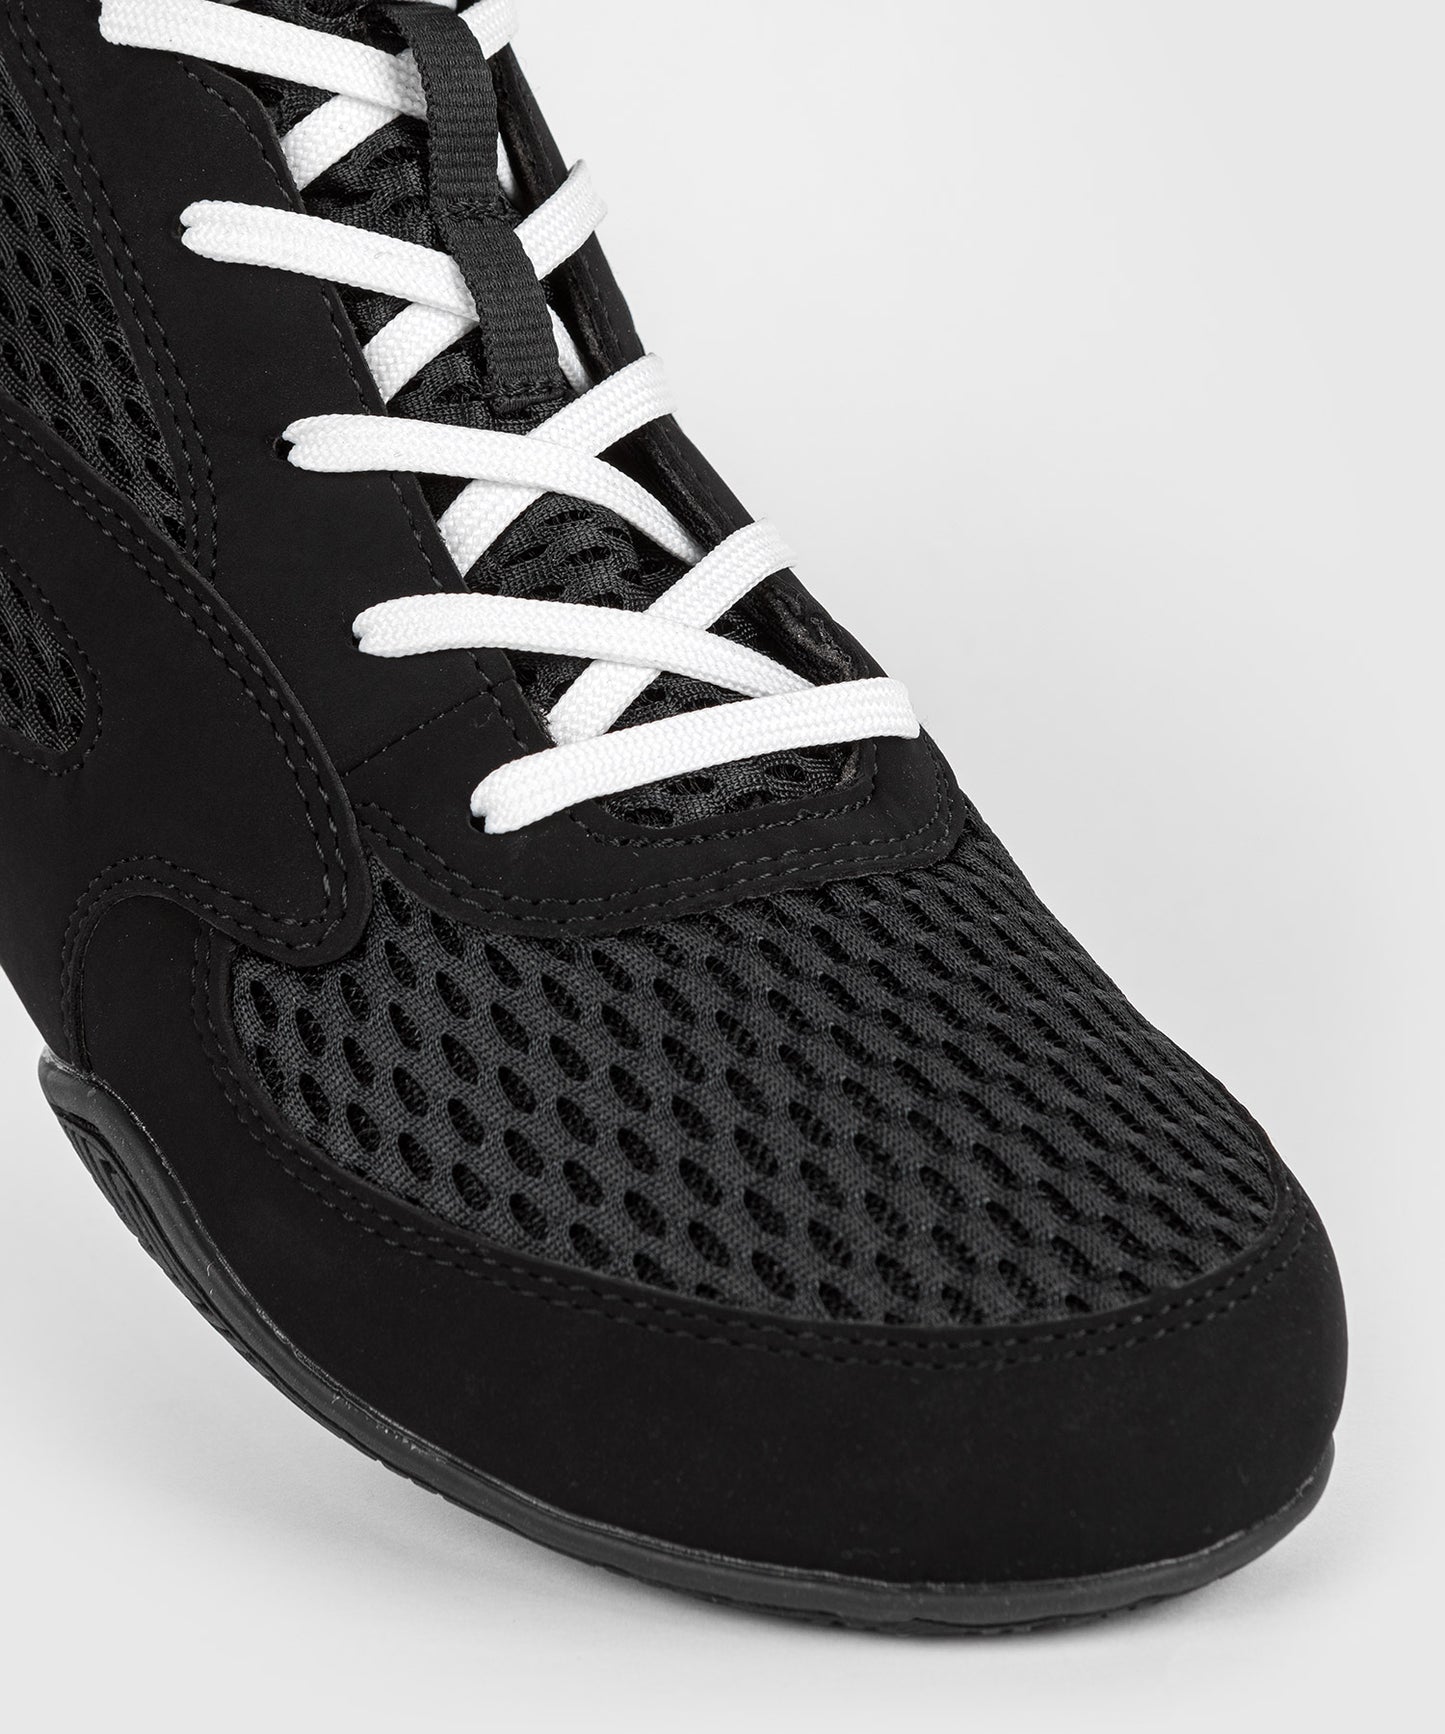 Chaussures de boxe Venum Contender - Noir/Blanc